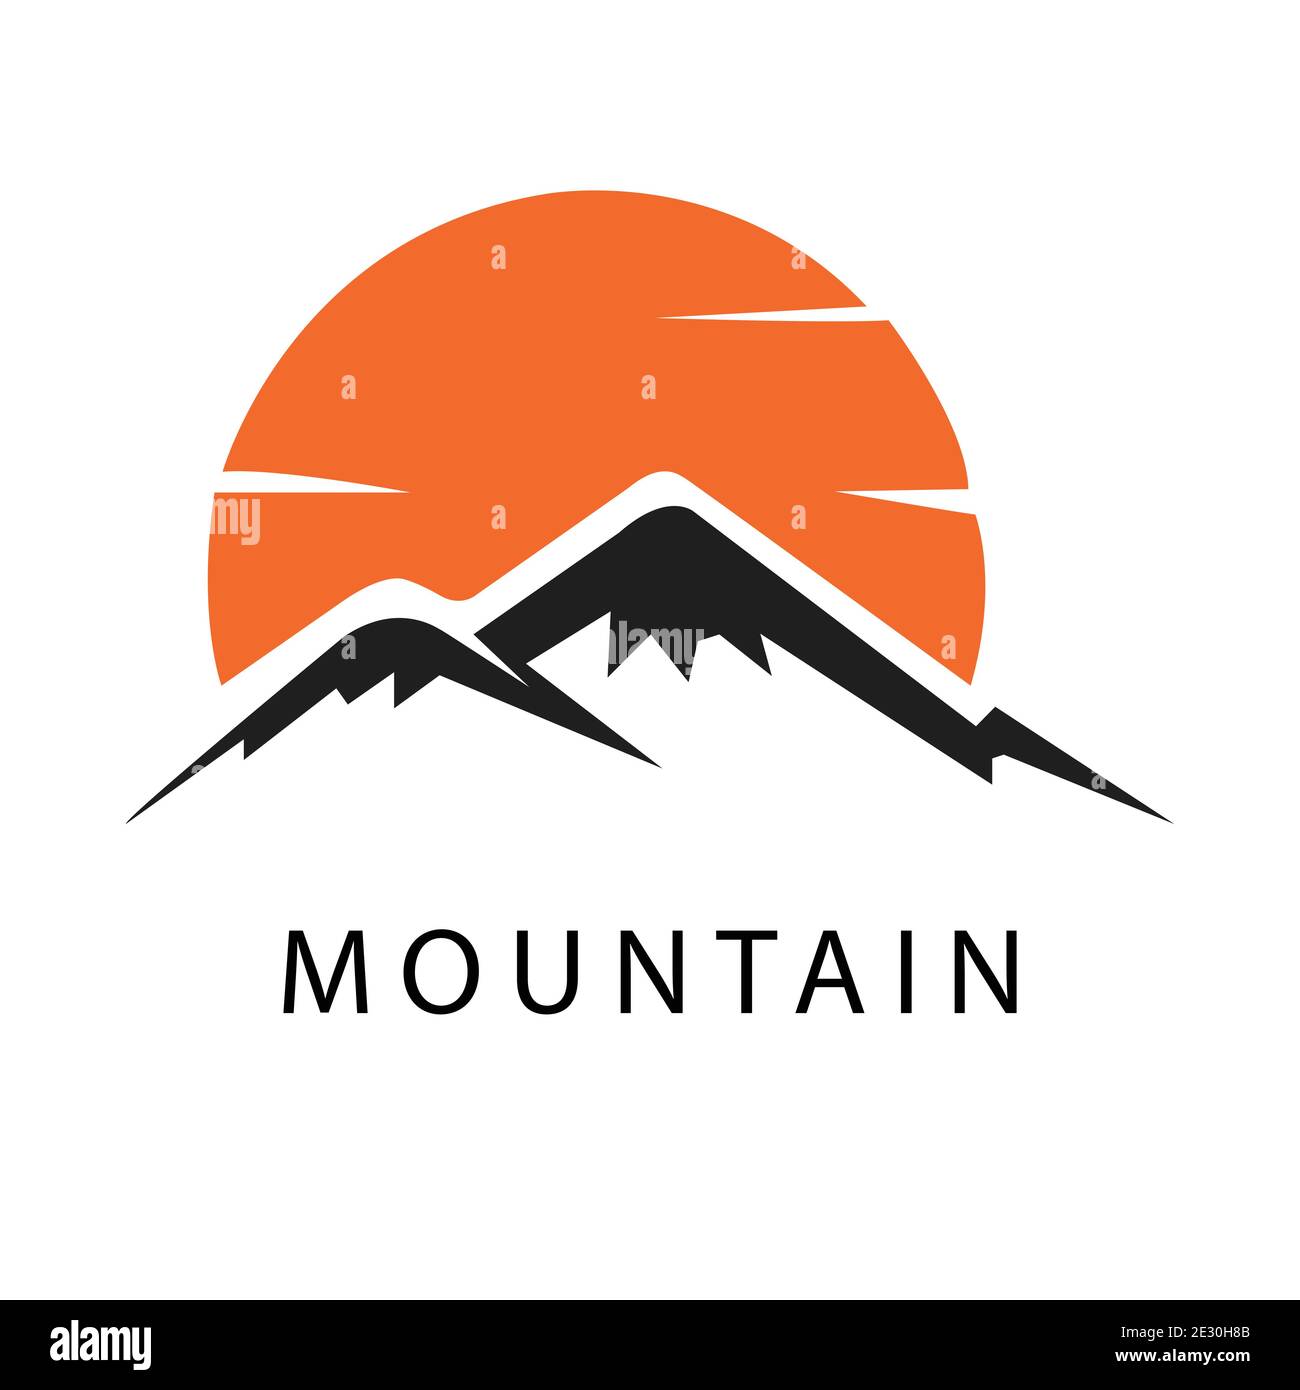 abstract Mountain logo icon vector Stock Vector